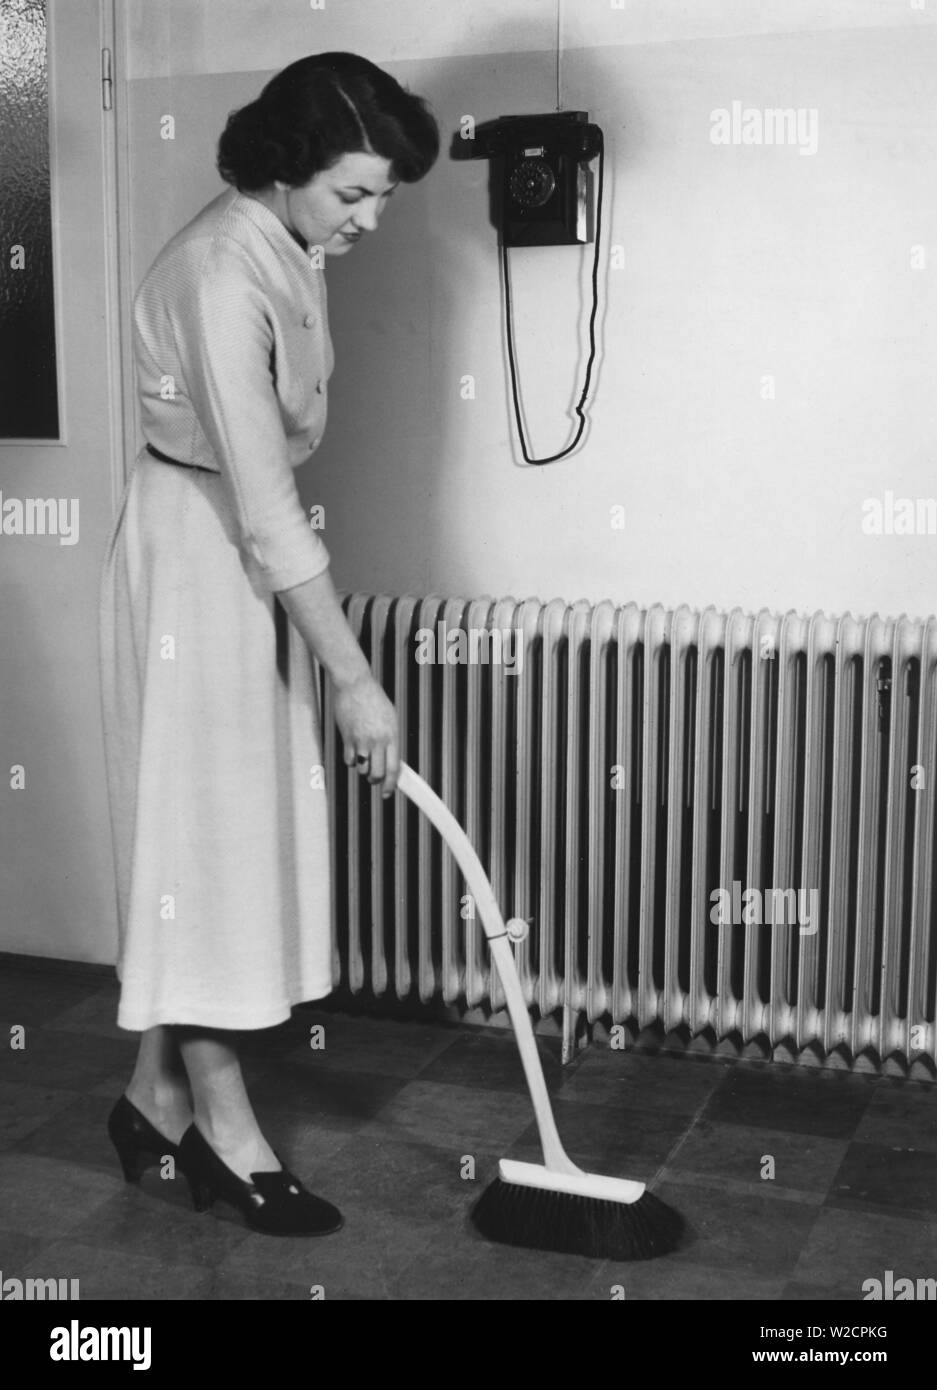 Journée de nettoyage dans les années 40. Une jeune femme est le nettoyage de son appartement et est a l'aide d'une douille avec une poignée télescopique. Une nouvelle invention pour se tenir bien droit lorsque la poussière et éviter les douleurs au dos. Suède 1949 Banque D'Images